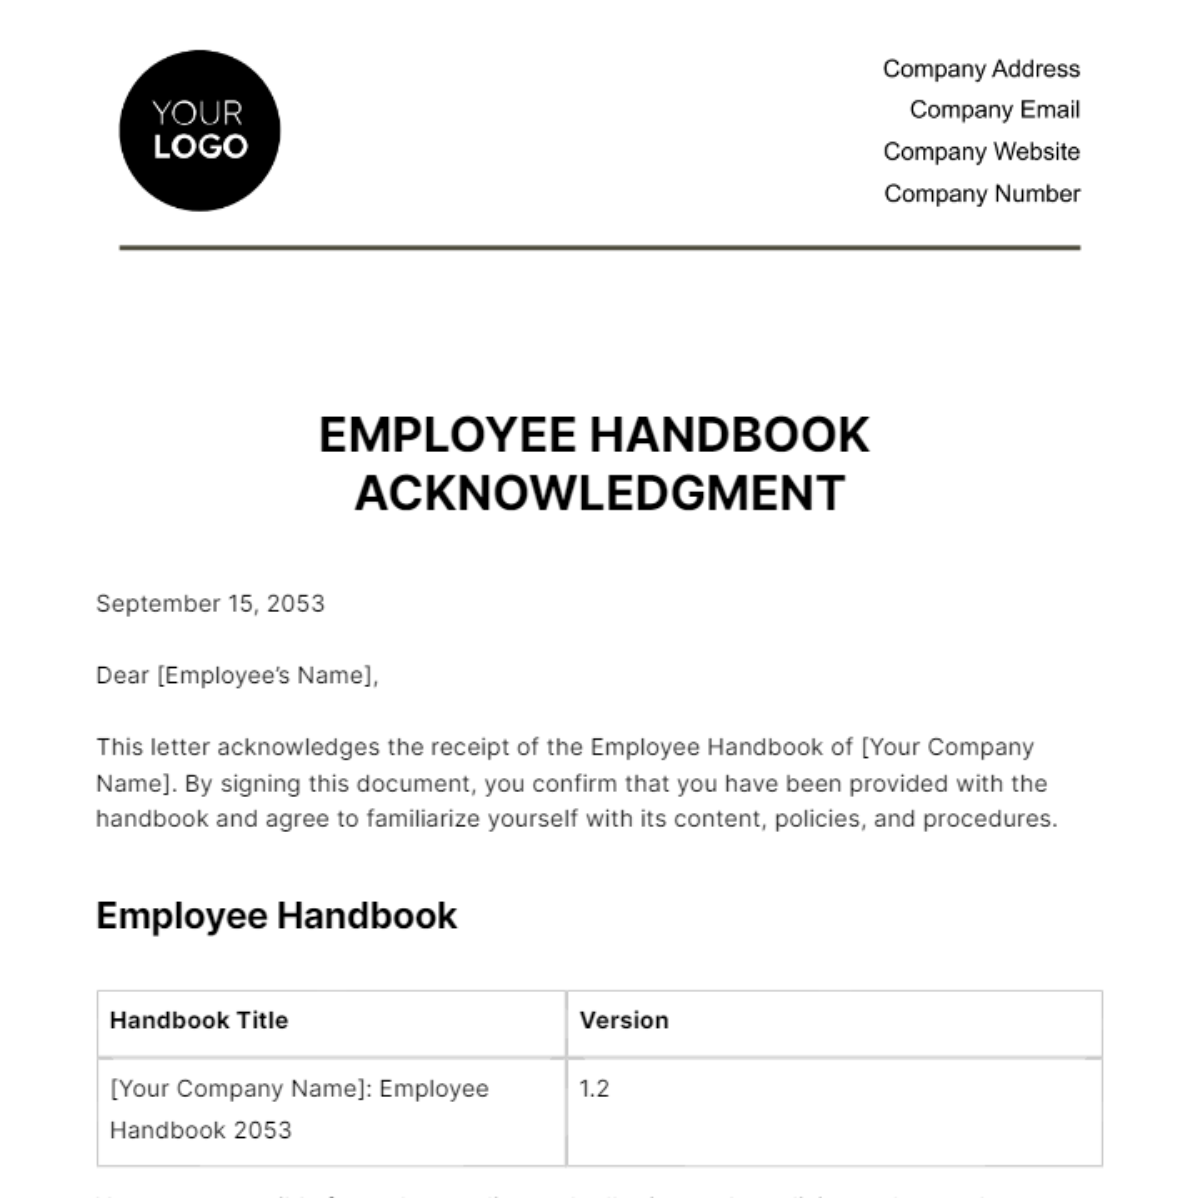 Employee Handbook Acknowledgment HR Template